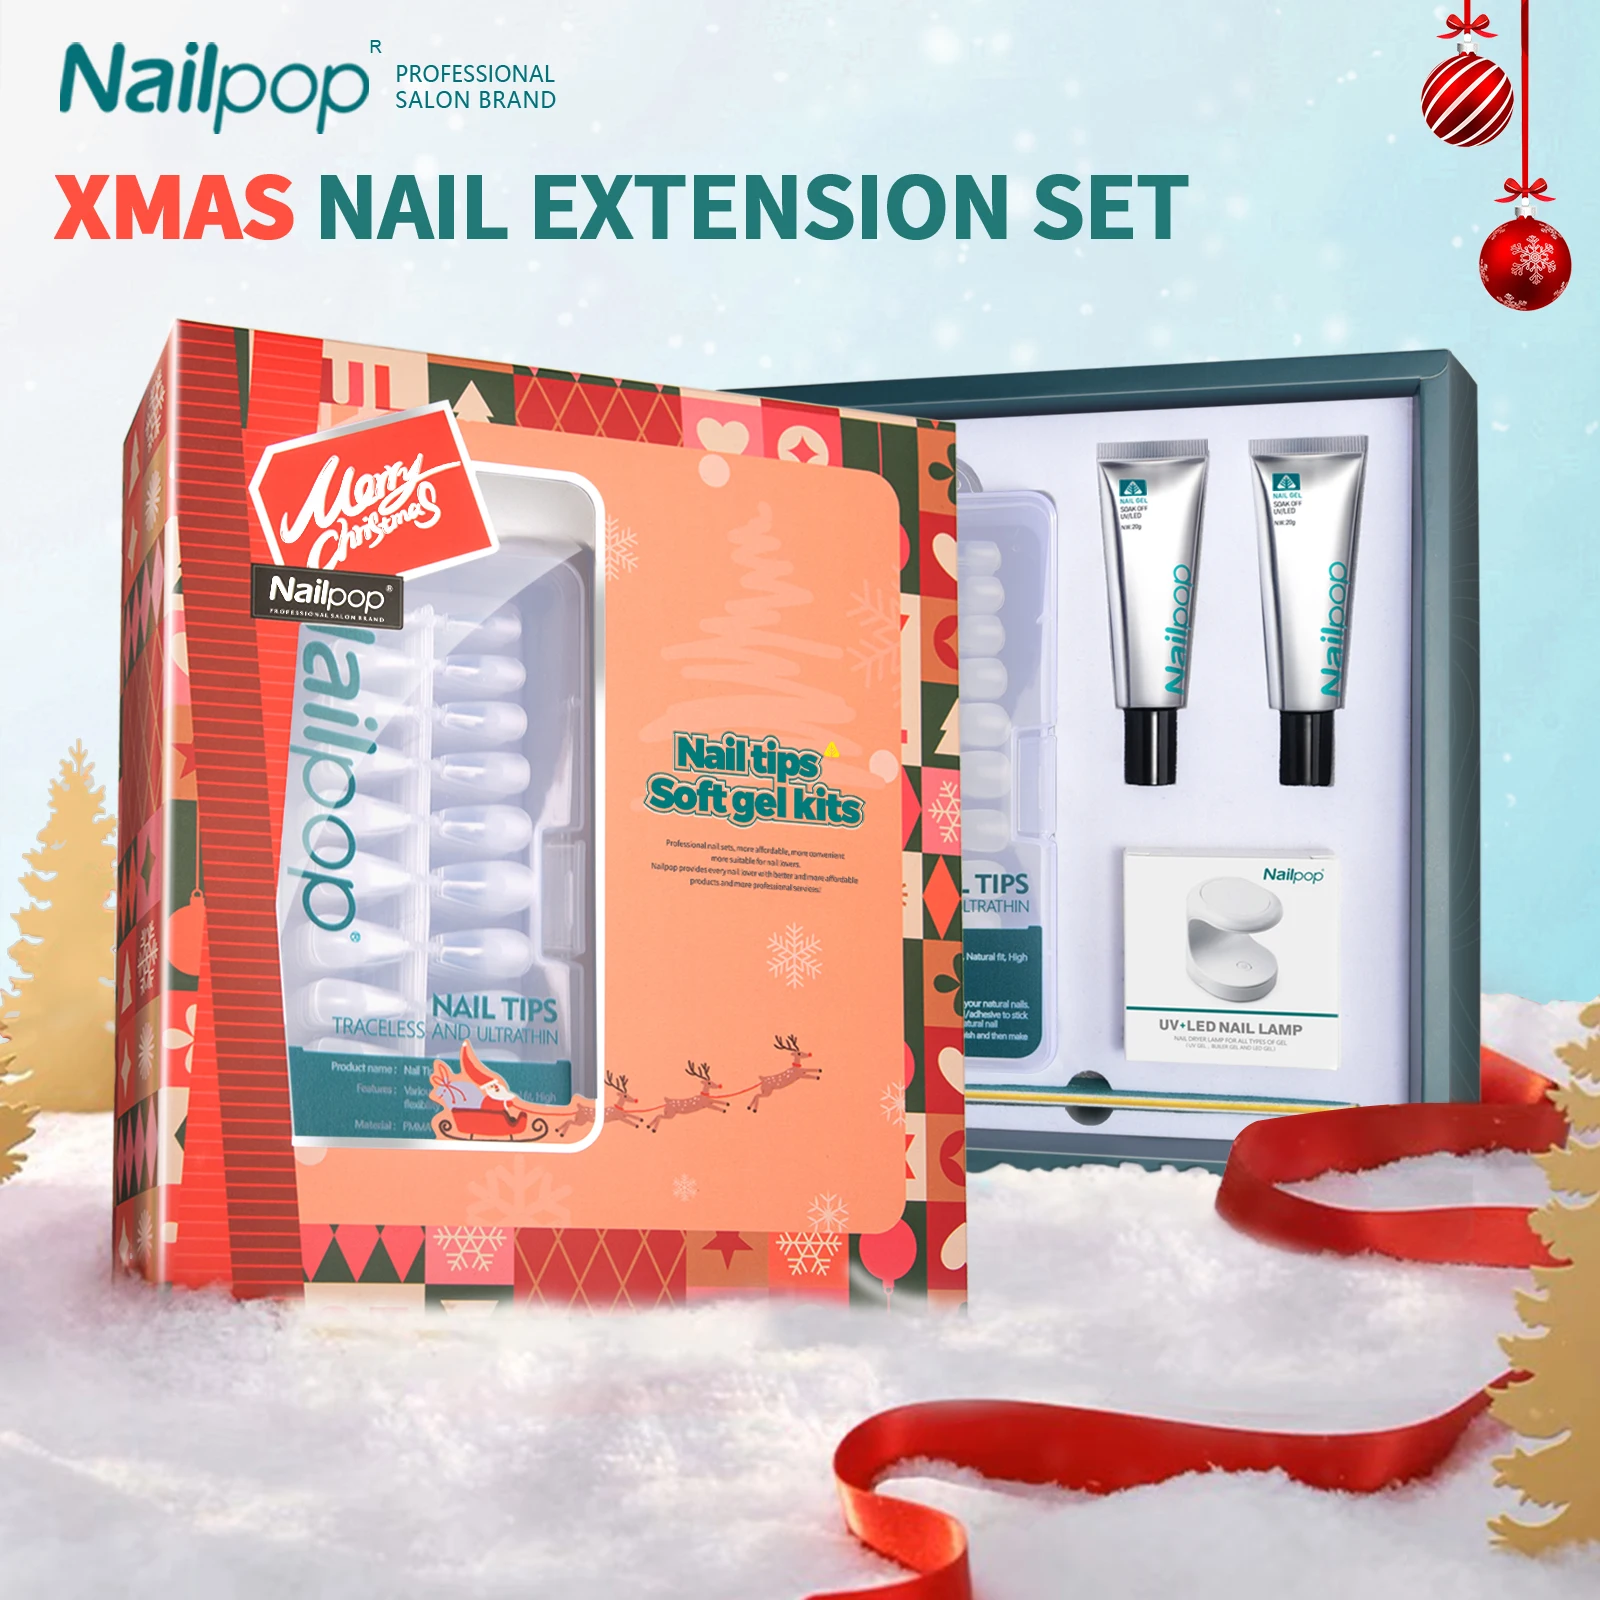 Nailpop christmas nail art kit xmas fake nail tips set portable uv led lamp soft gel thumb200